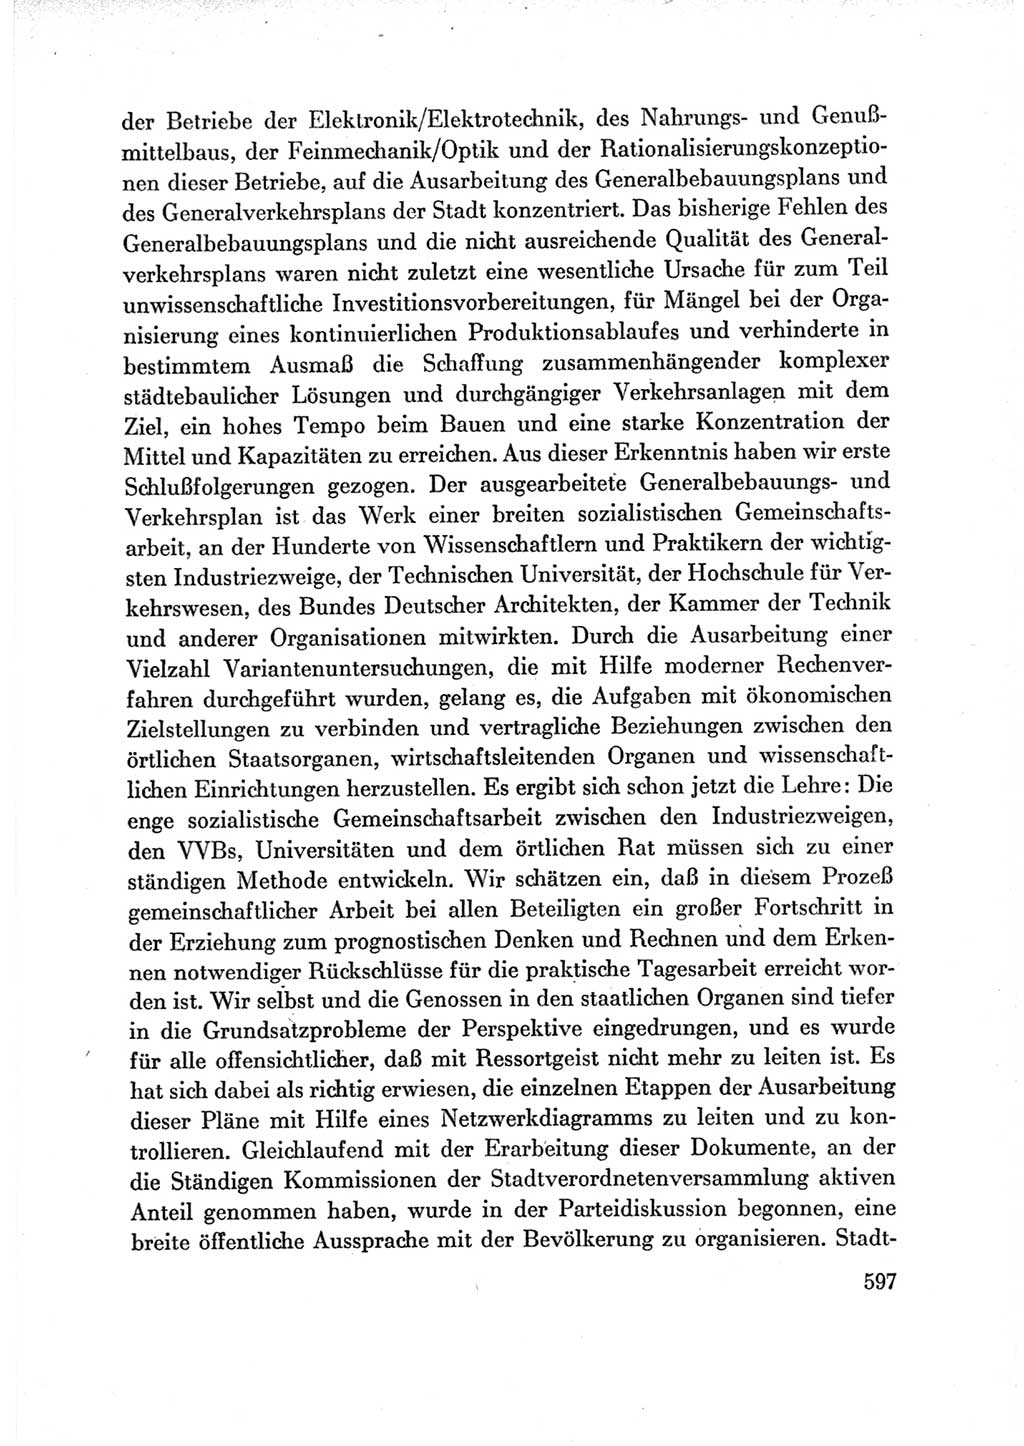 Protokoll der Verhandlungen des Ⅶ. Parteitages der Sozialistischen Einheitspartei Deutschlands (SED) [Deutsche Demokratische Republik (DDR)] 1967, Band Ⅲ, Seite 597 (Prot. Verh. Ⅶ. PT SED DDR 1967, Bd. Ⅲ, S. 597)